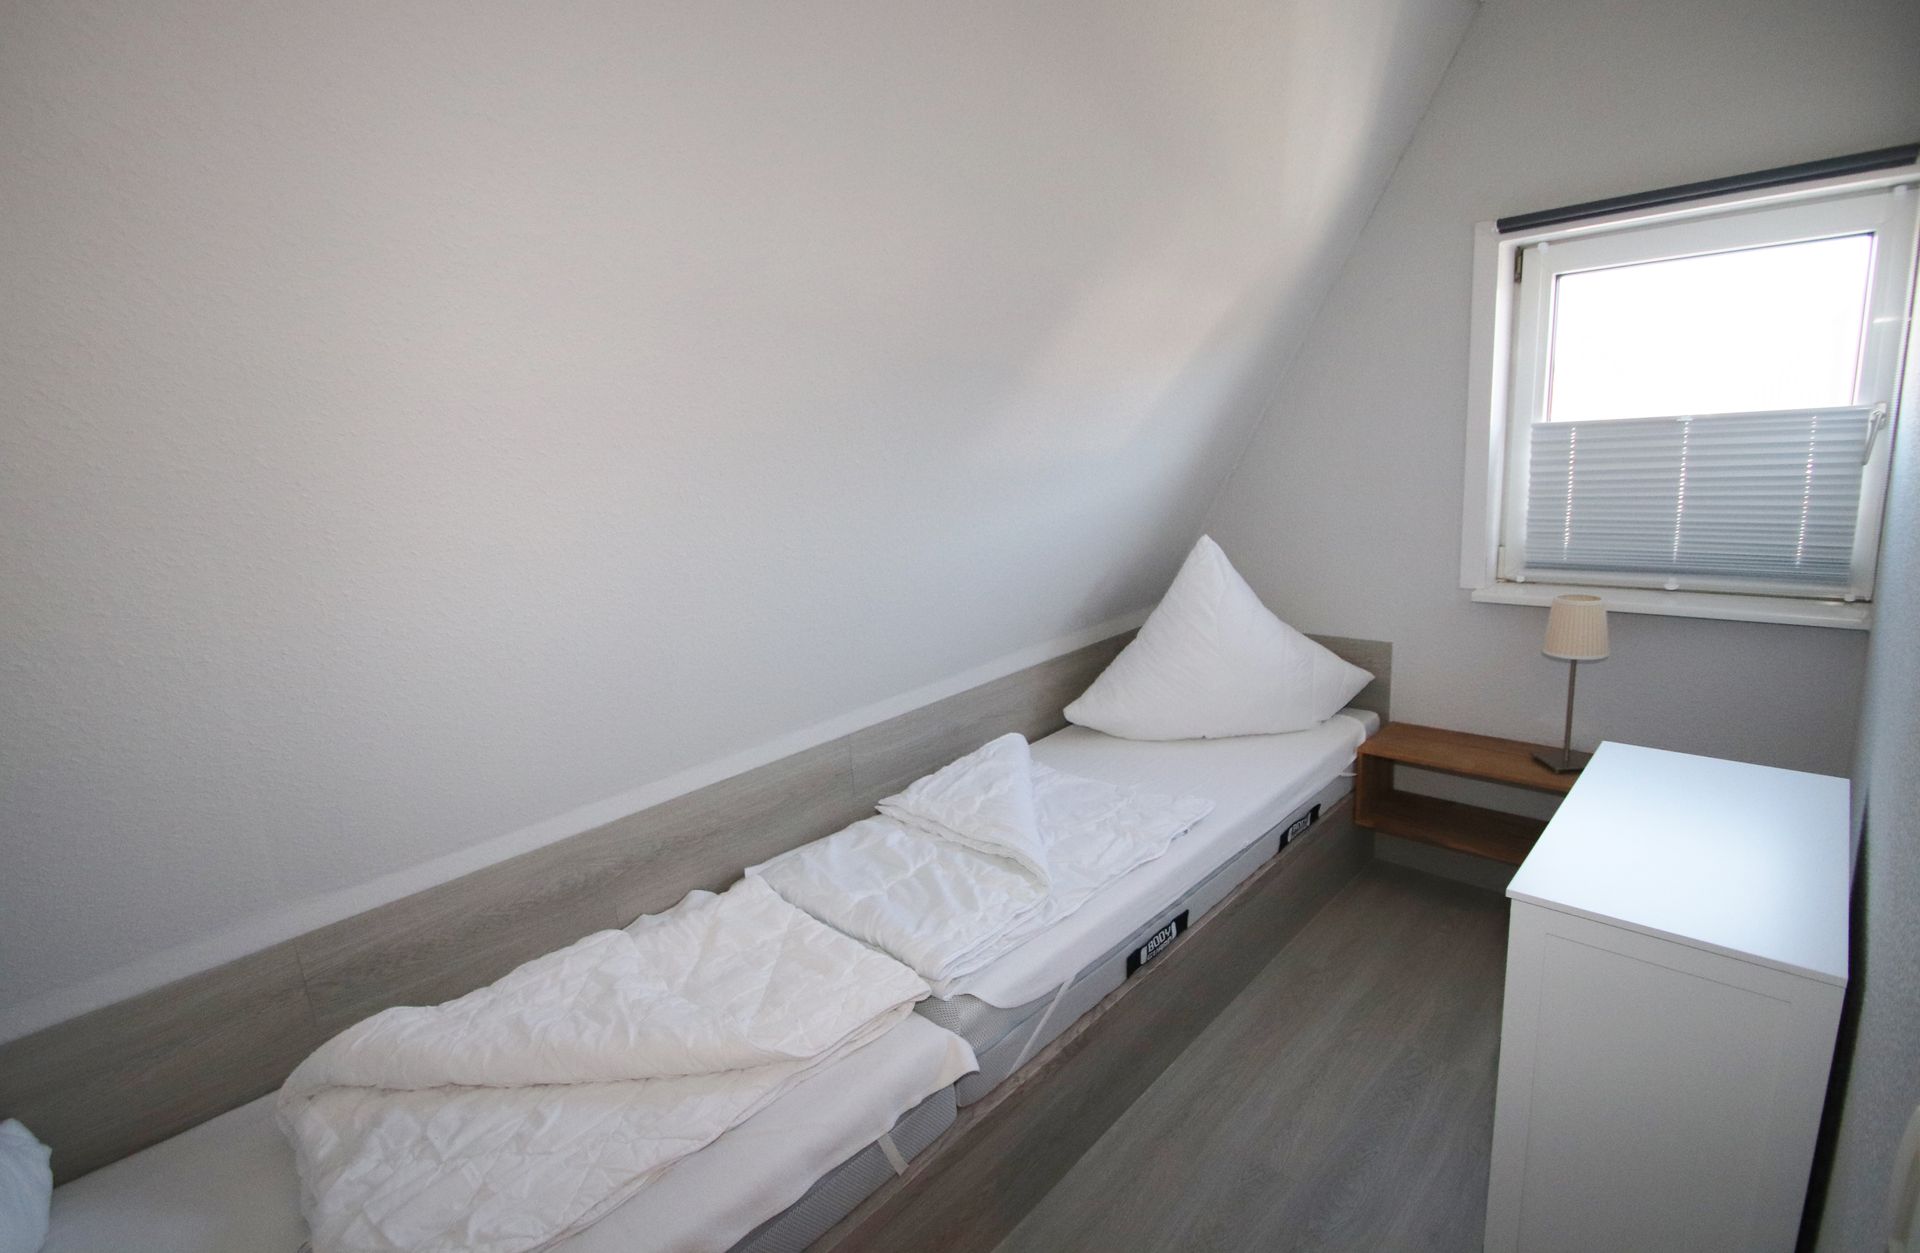 Schlafraum mit zwei Einzelbetten im Obergeschoss Ferienhaus Möwenweg 14 Nordsee Friedrichskoog